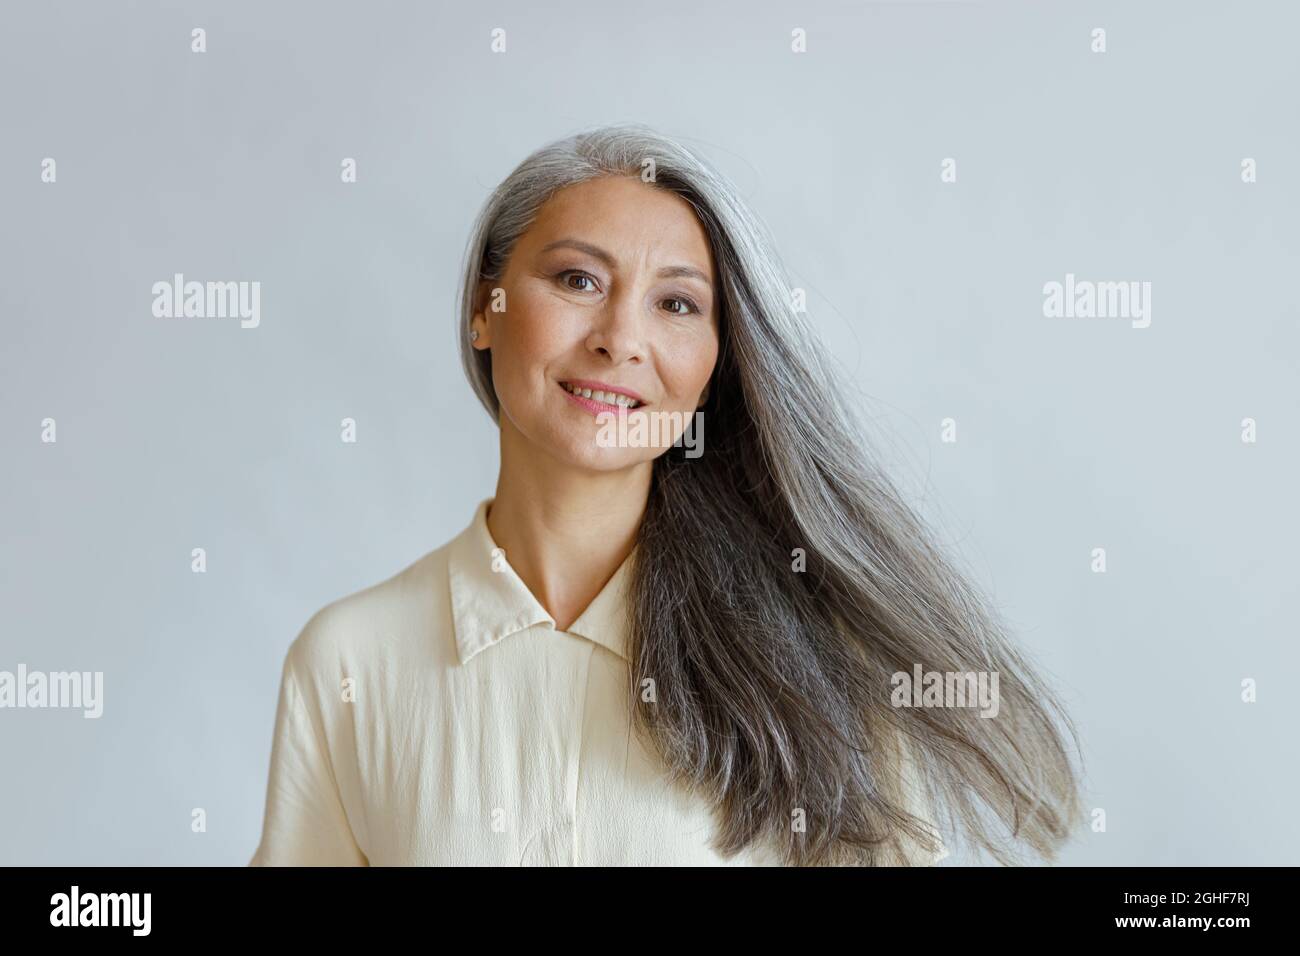 Lächelnde asiatische Frau mittleren Alters mit fließenden grauen Haaren steht auf hellem Hintergrund Stockfoto